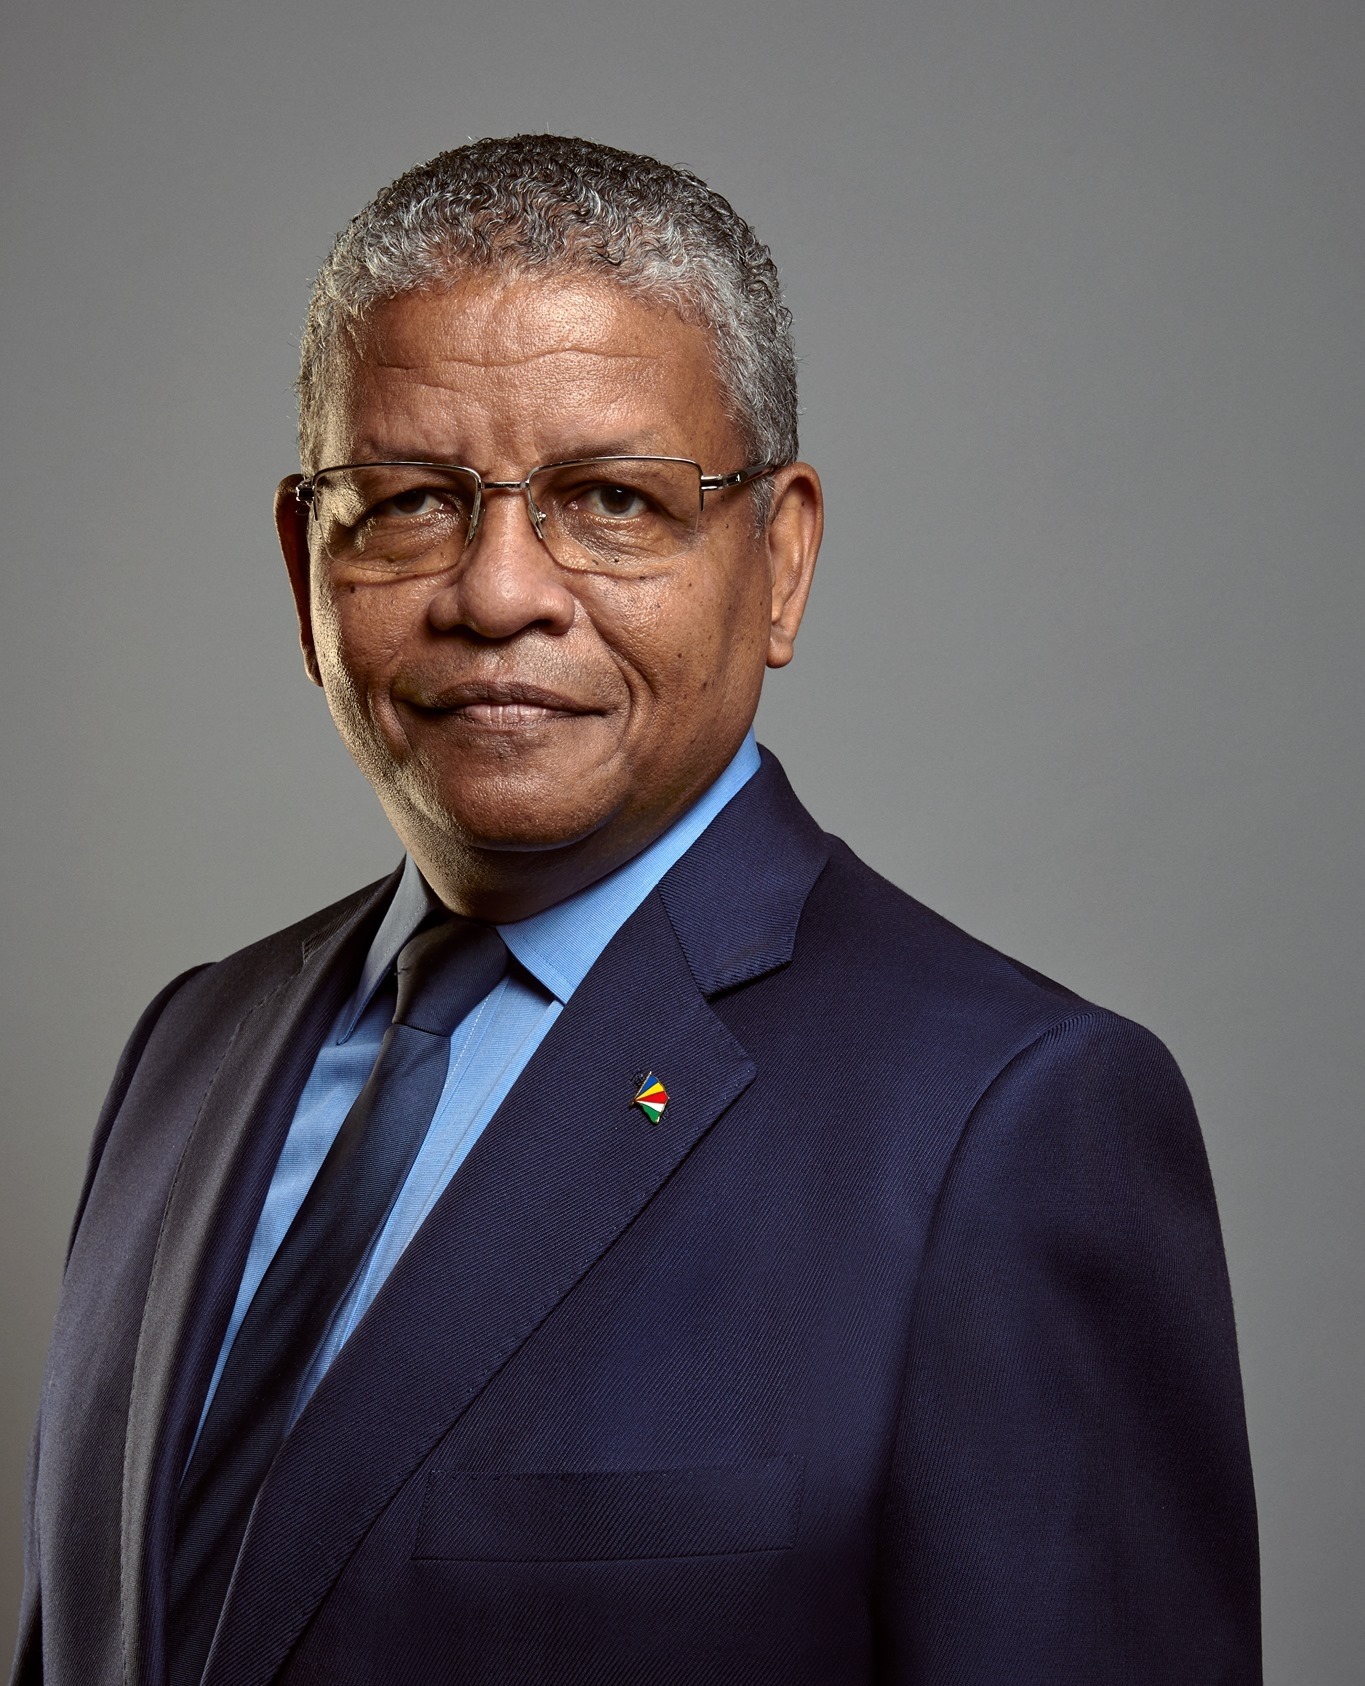 Wavel Ramkalawan, le nouveau et 5ème président des Seychelles